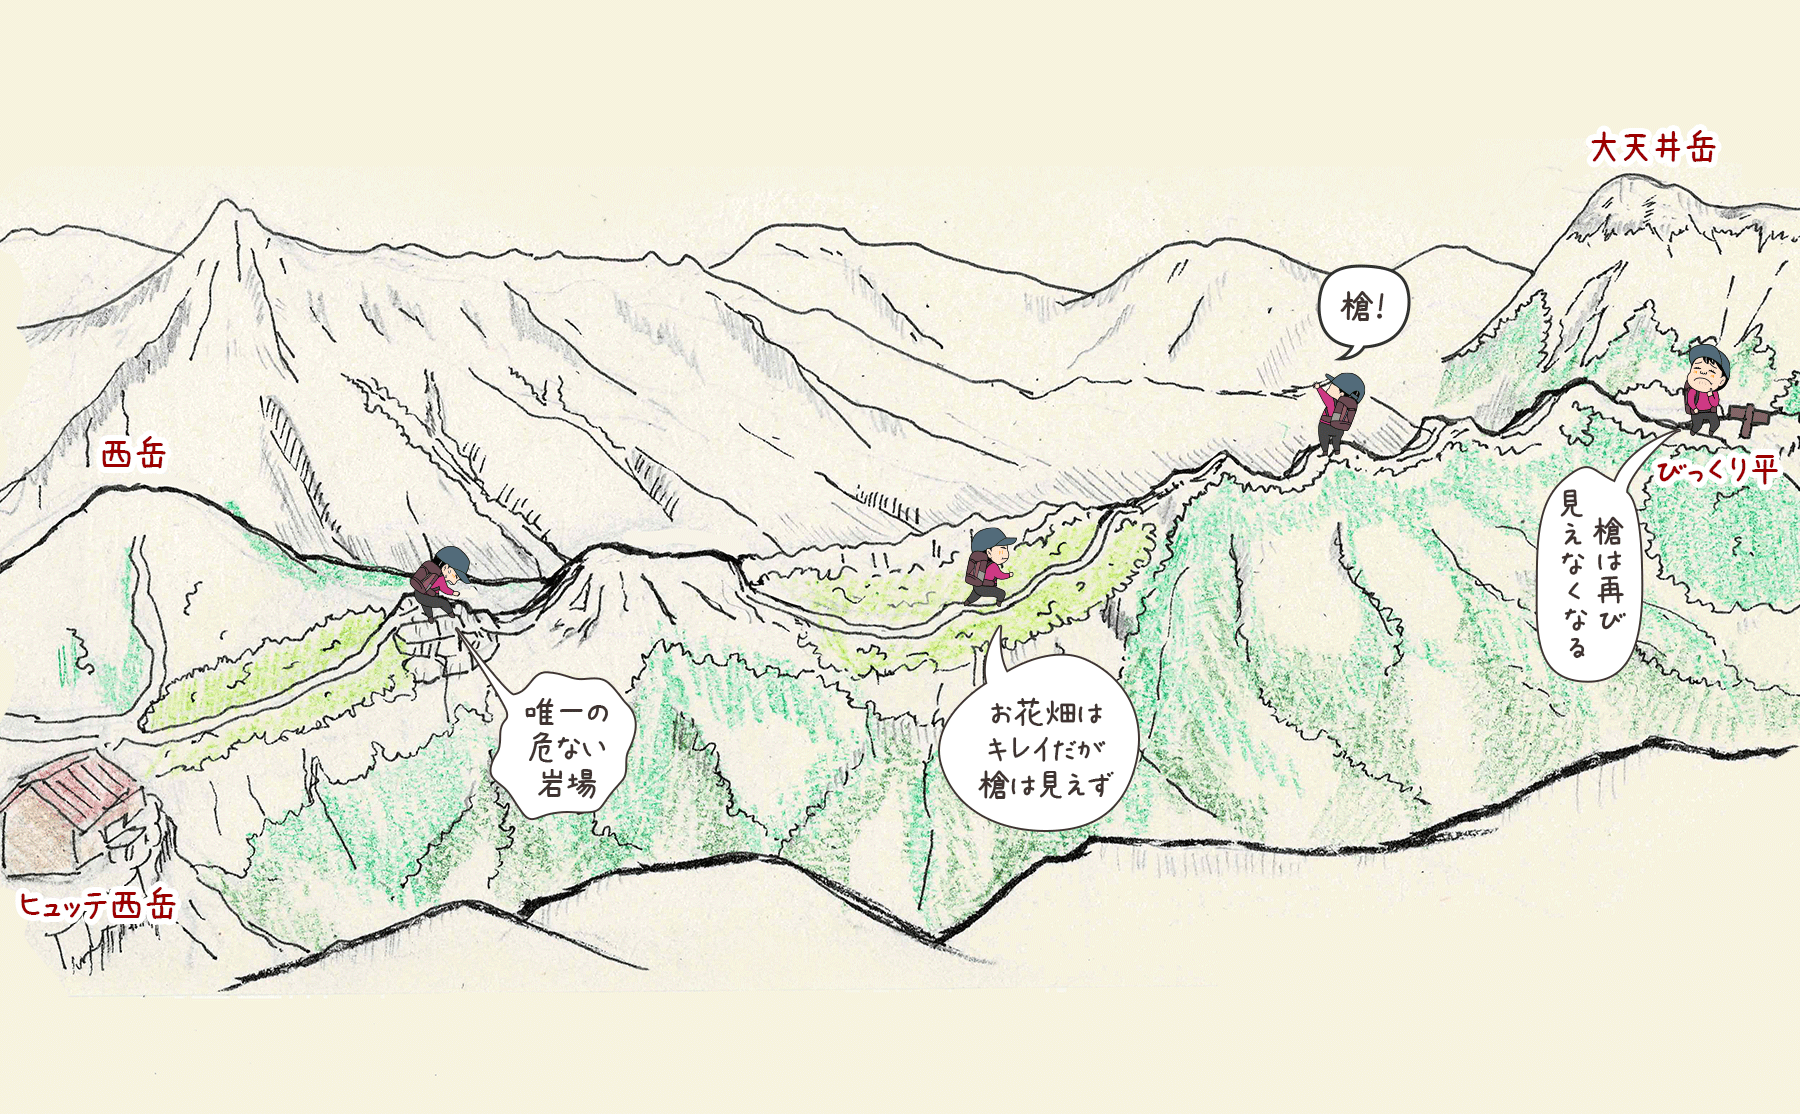 ヒュッテ西岳からびっくり平までの手書きイラストマップ